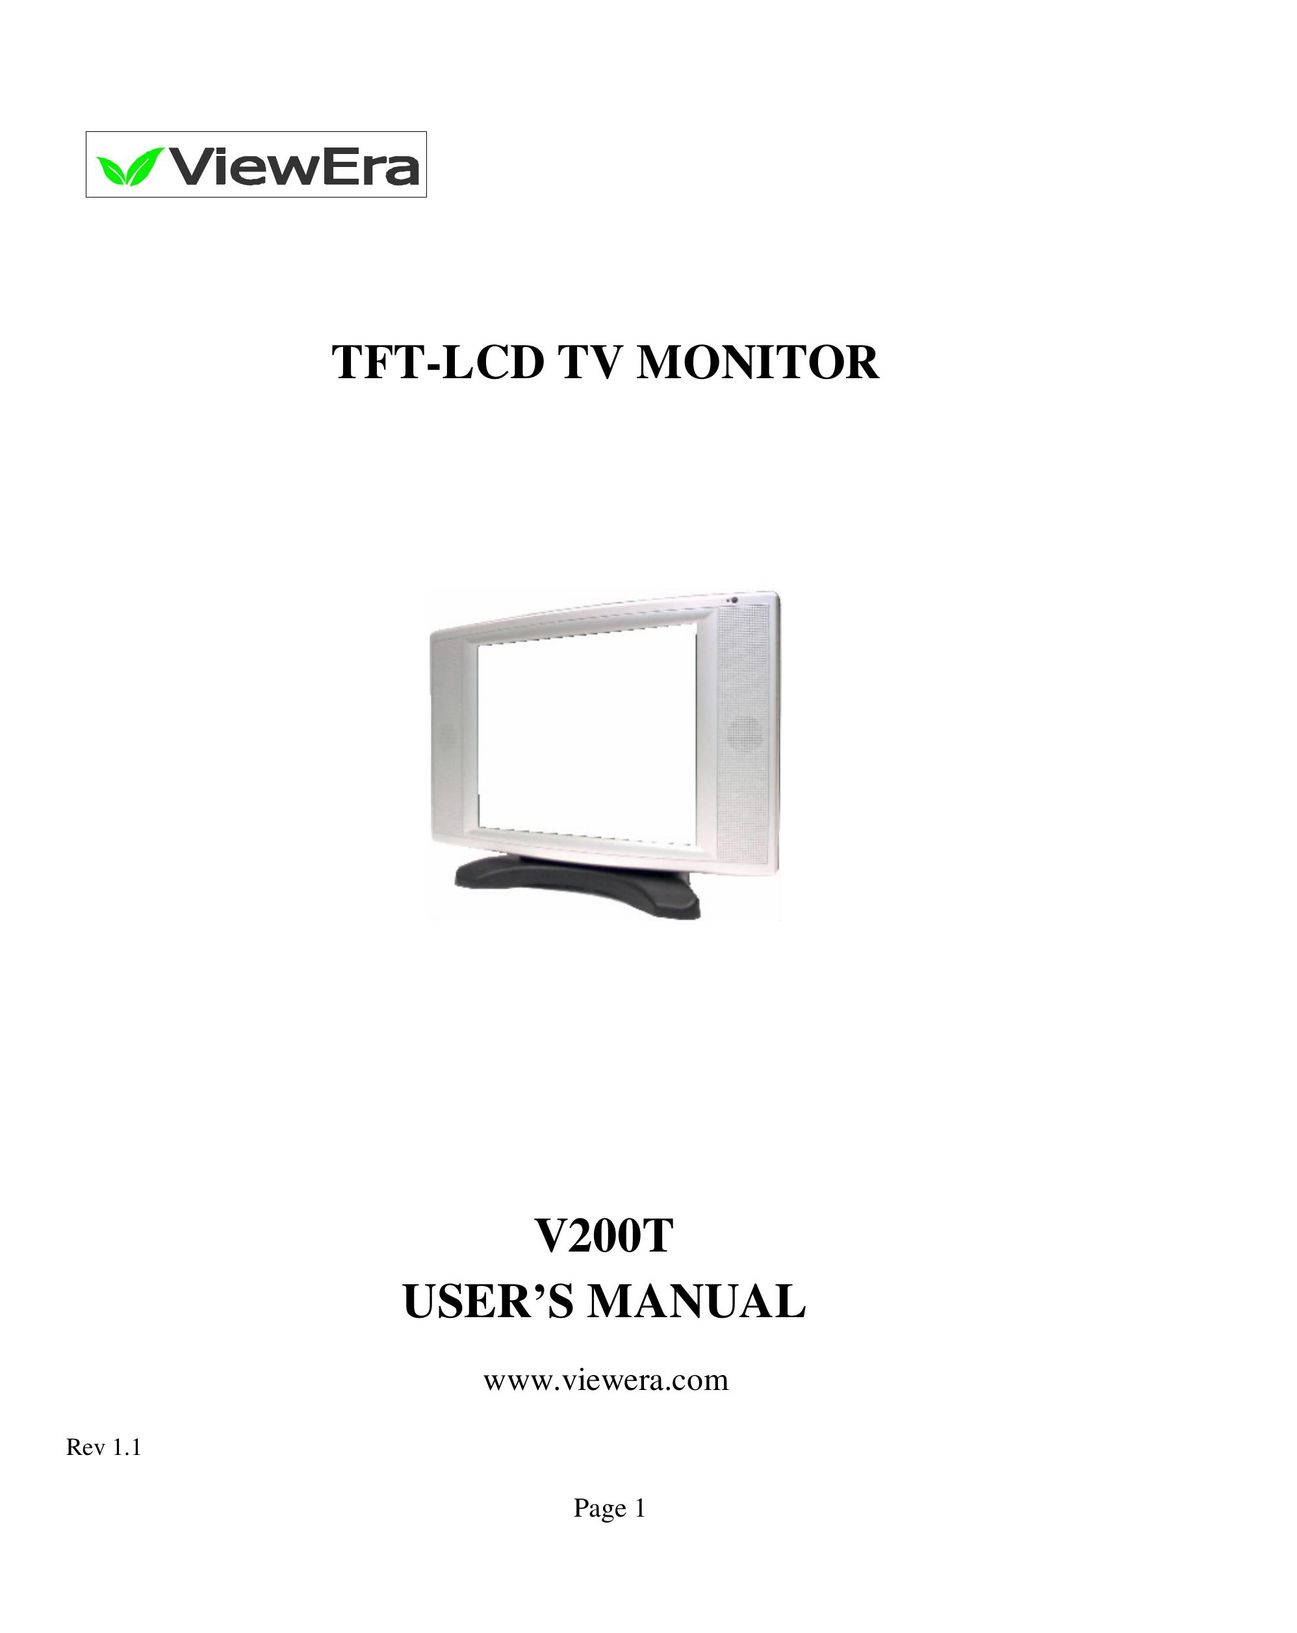 ViewEra V200T Flat Panel Television User Manual